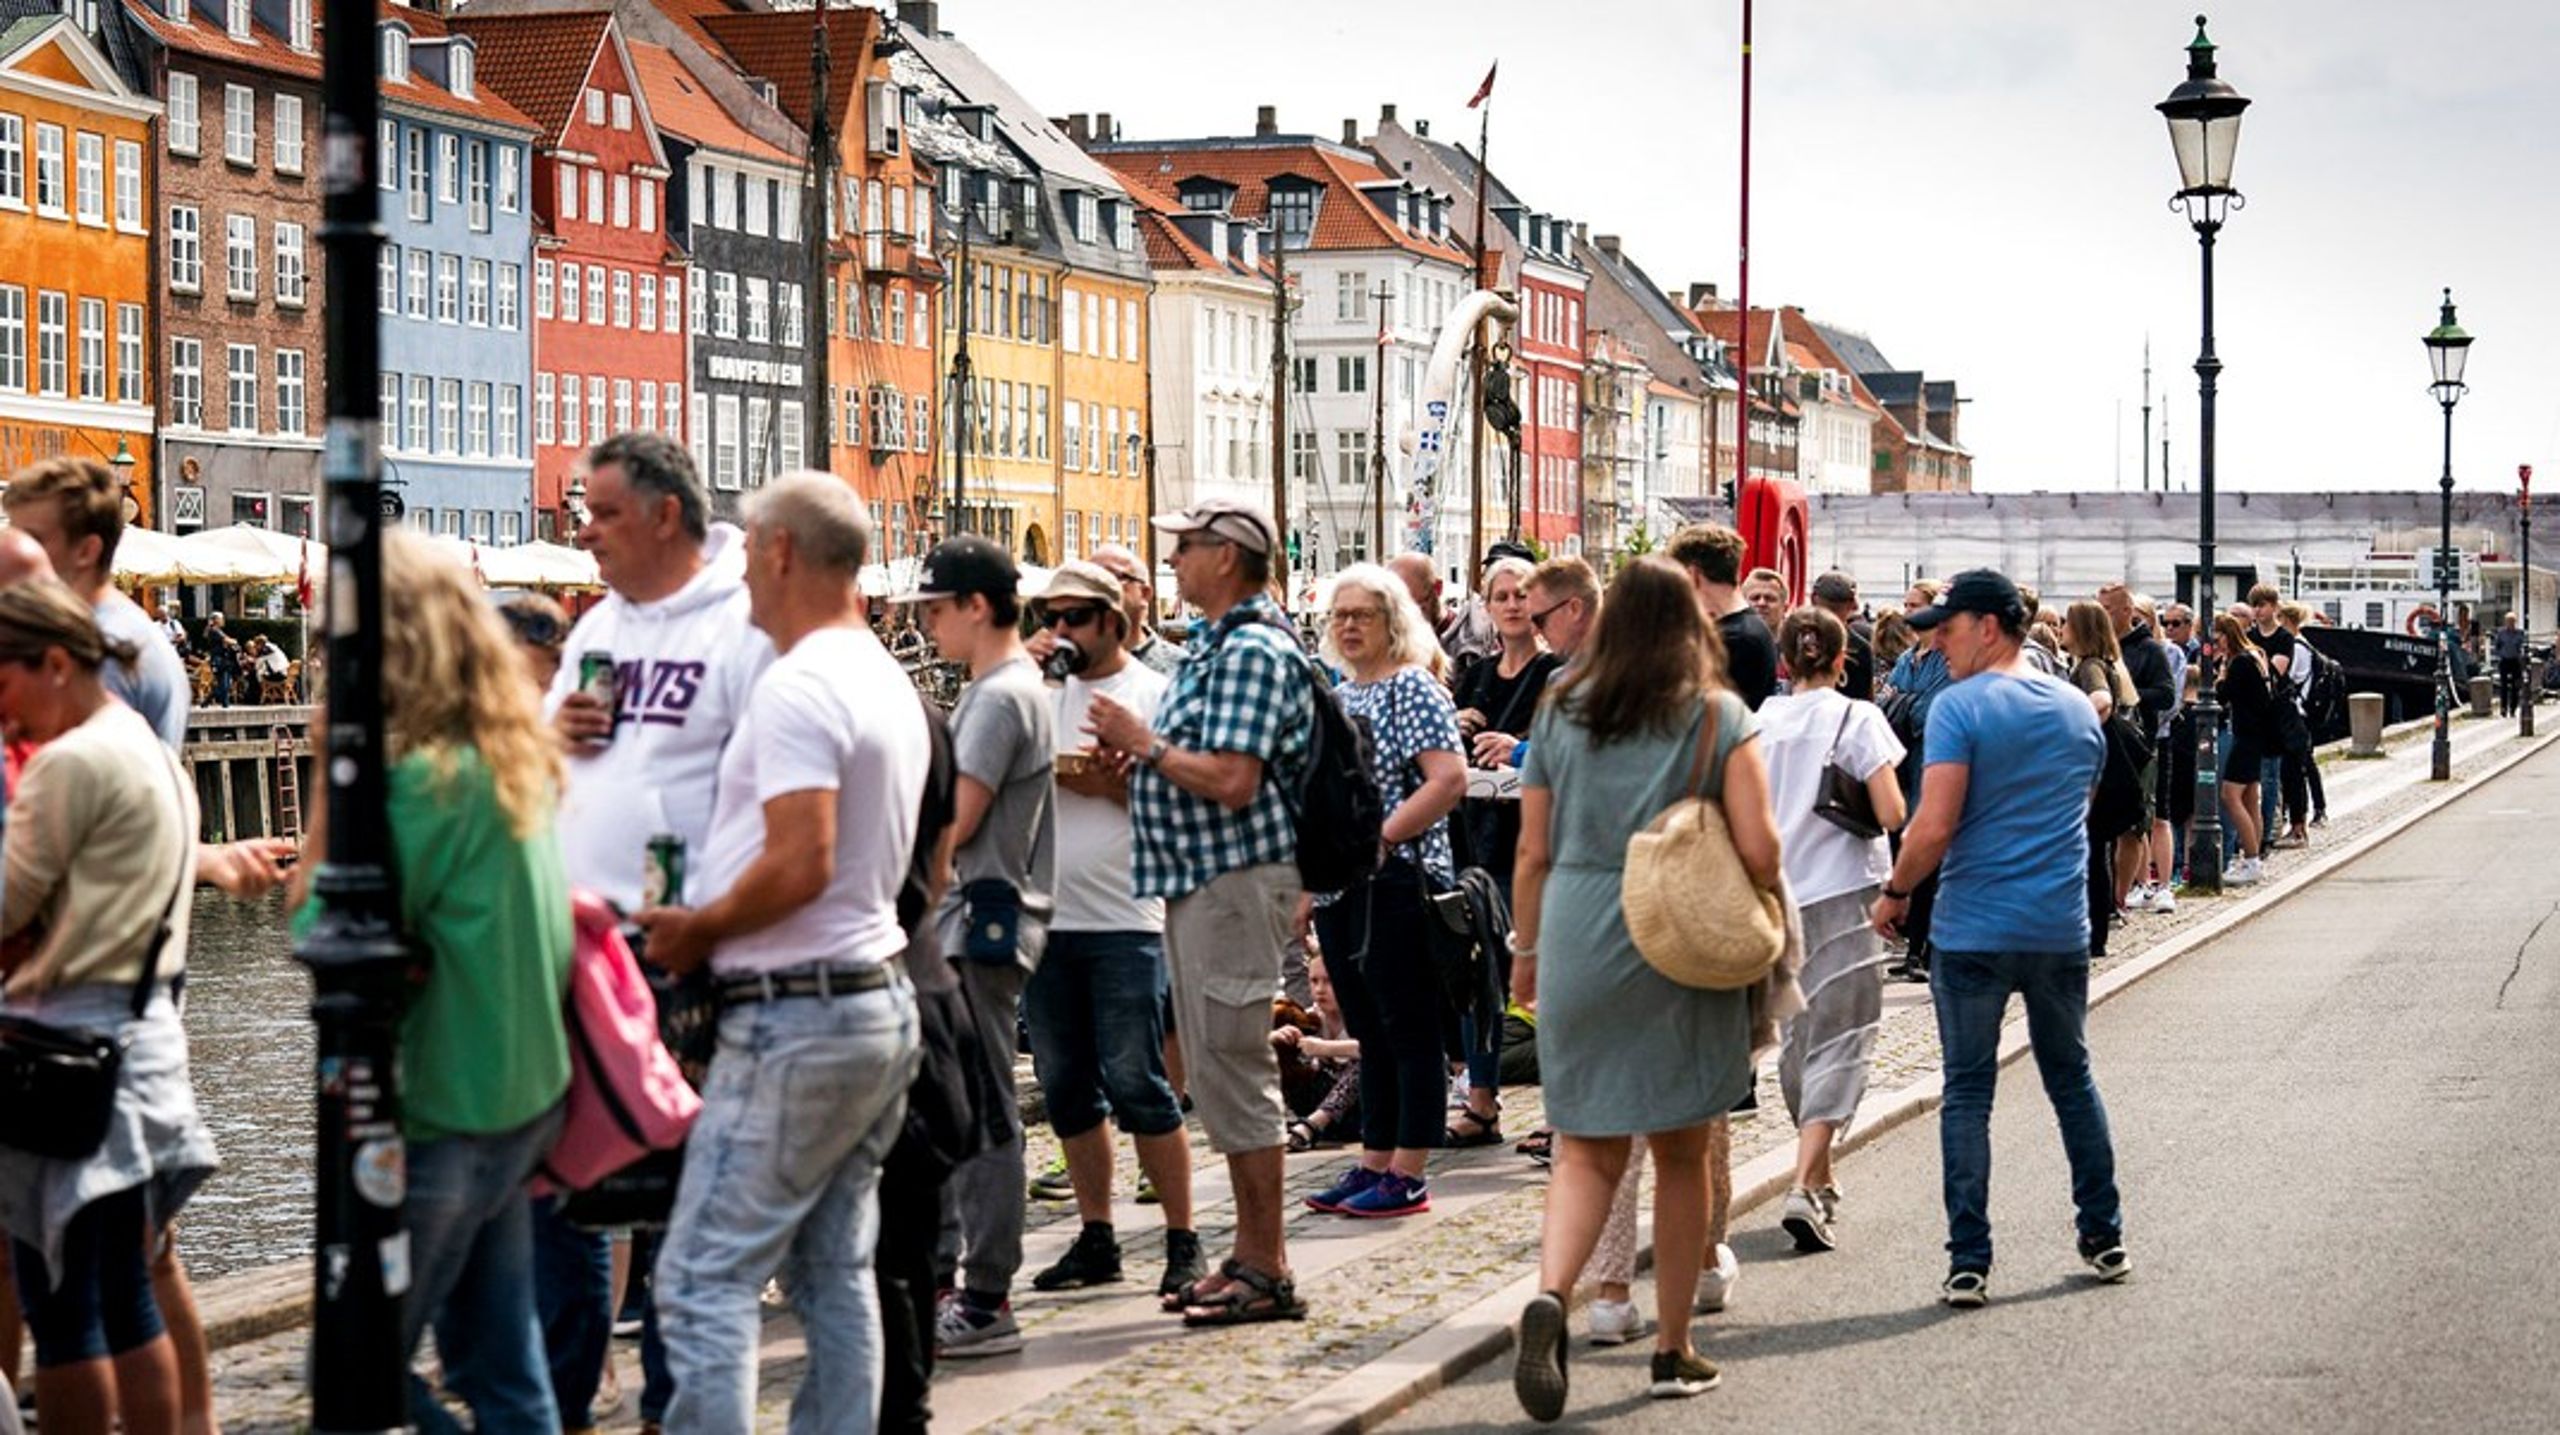 Turismen i København afhænger af tydelig politisk kommunikation og vilje til mangfoldige investeringer, skriver Annette Hyldebrandt.